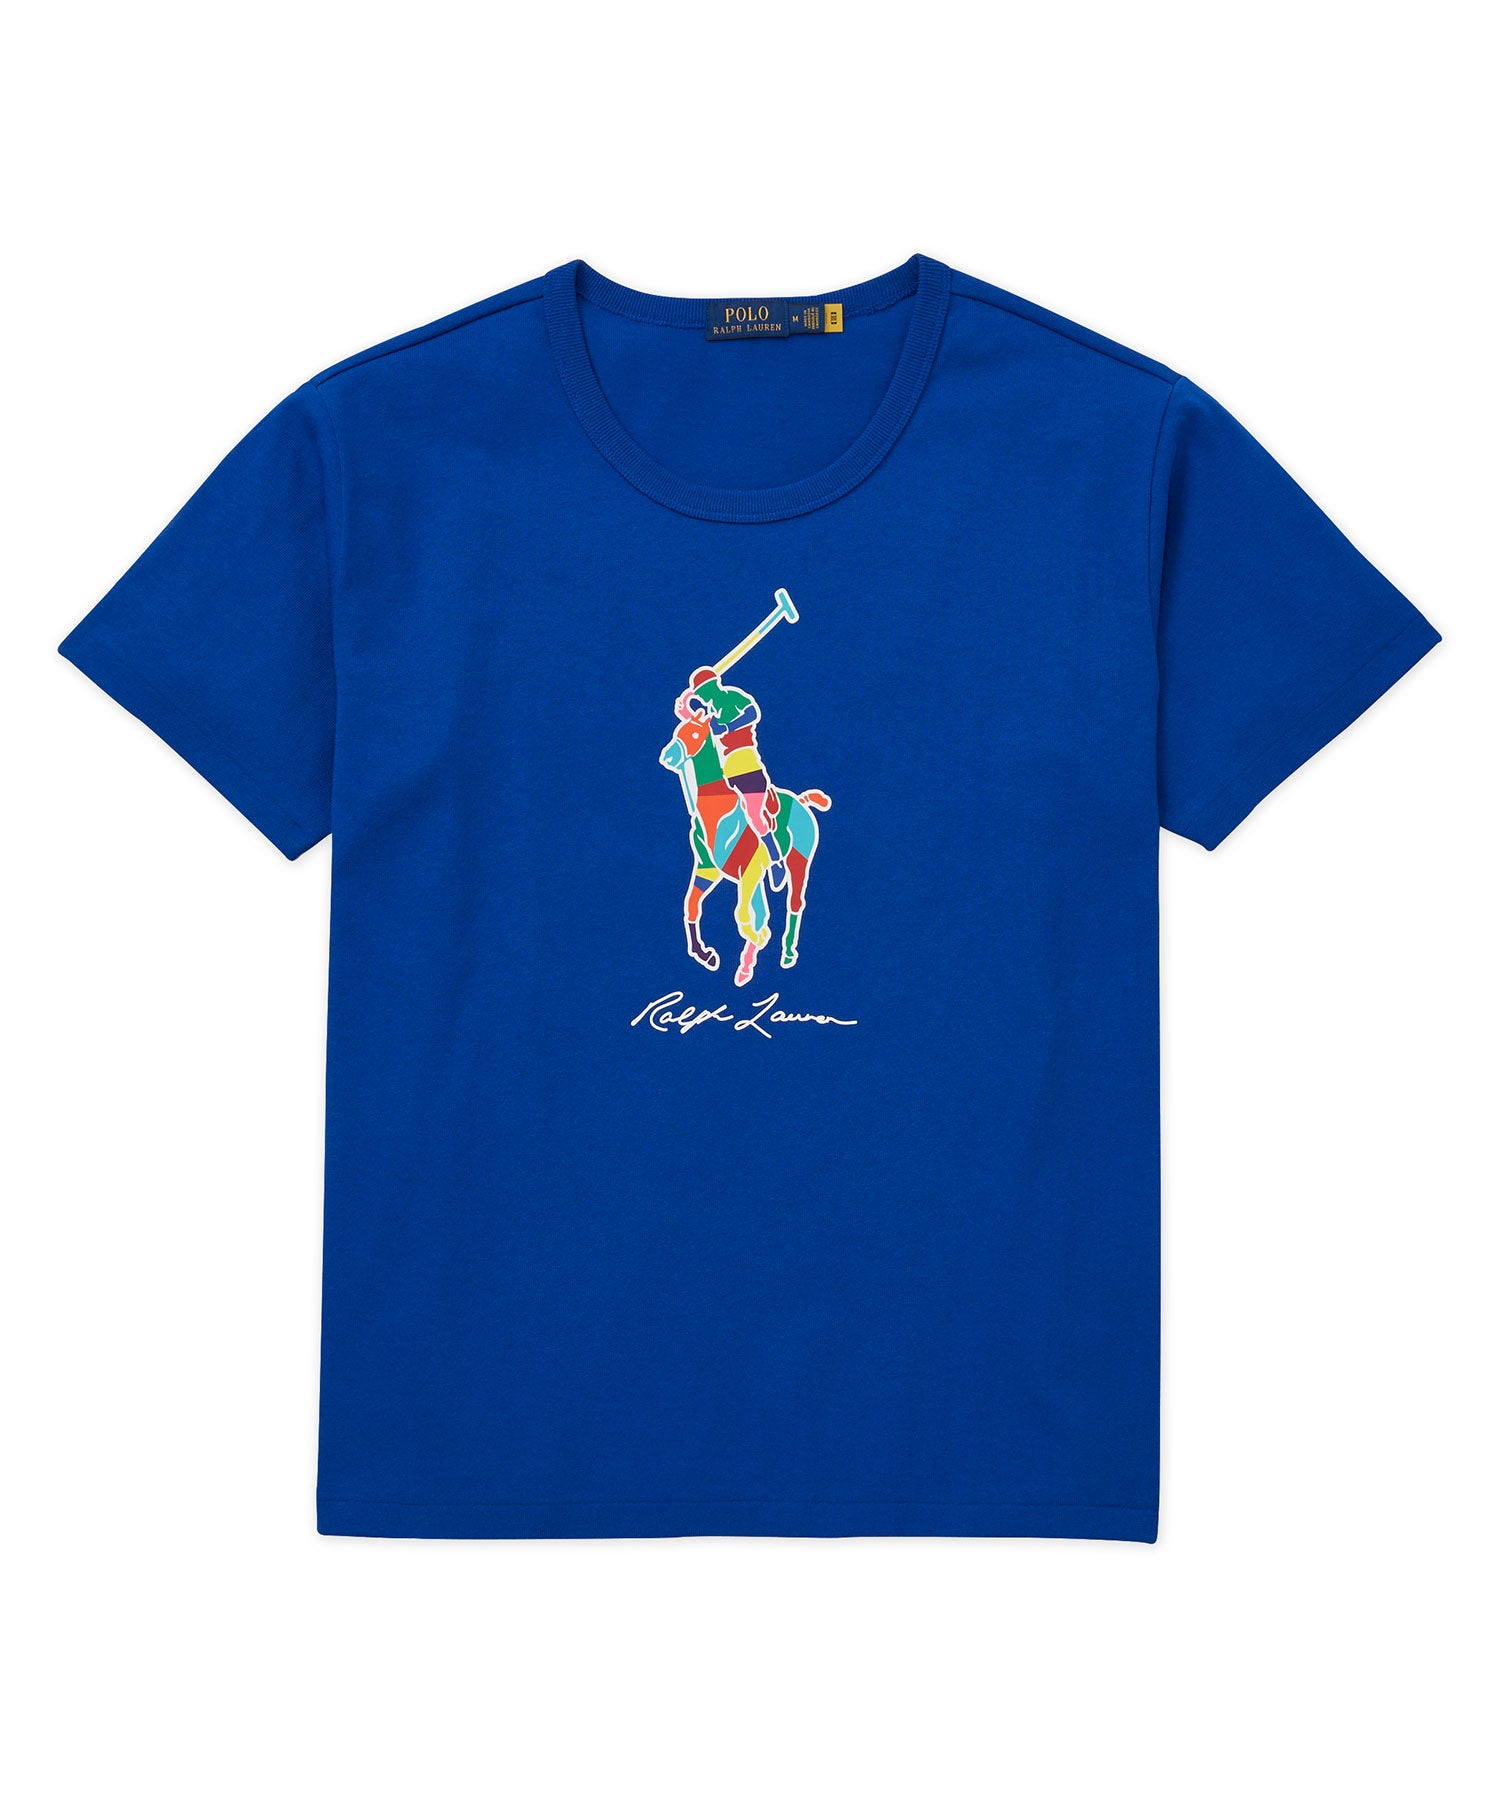 Polo Ralph Lauren Short Sleeve Big Pony Graphic T-Shirt - Westport